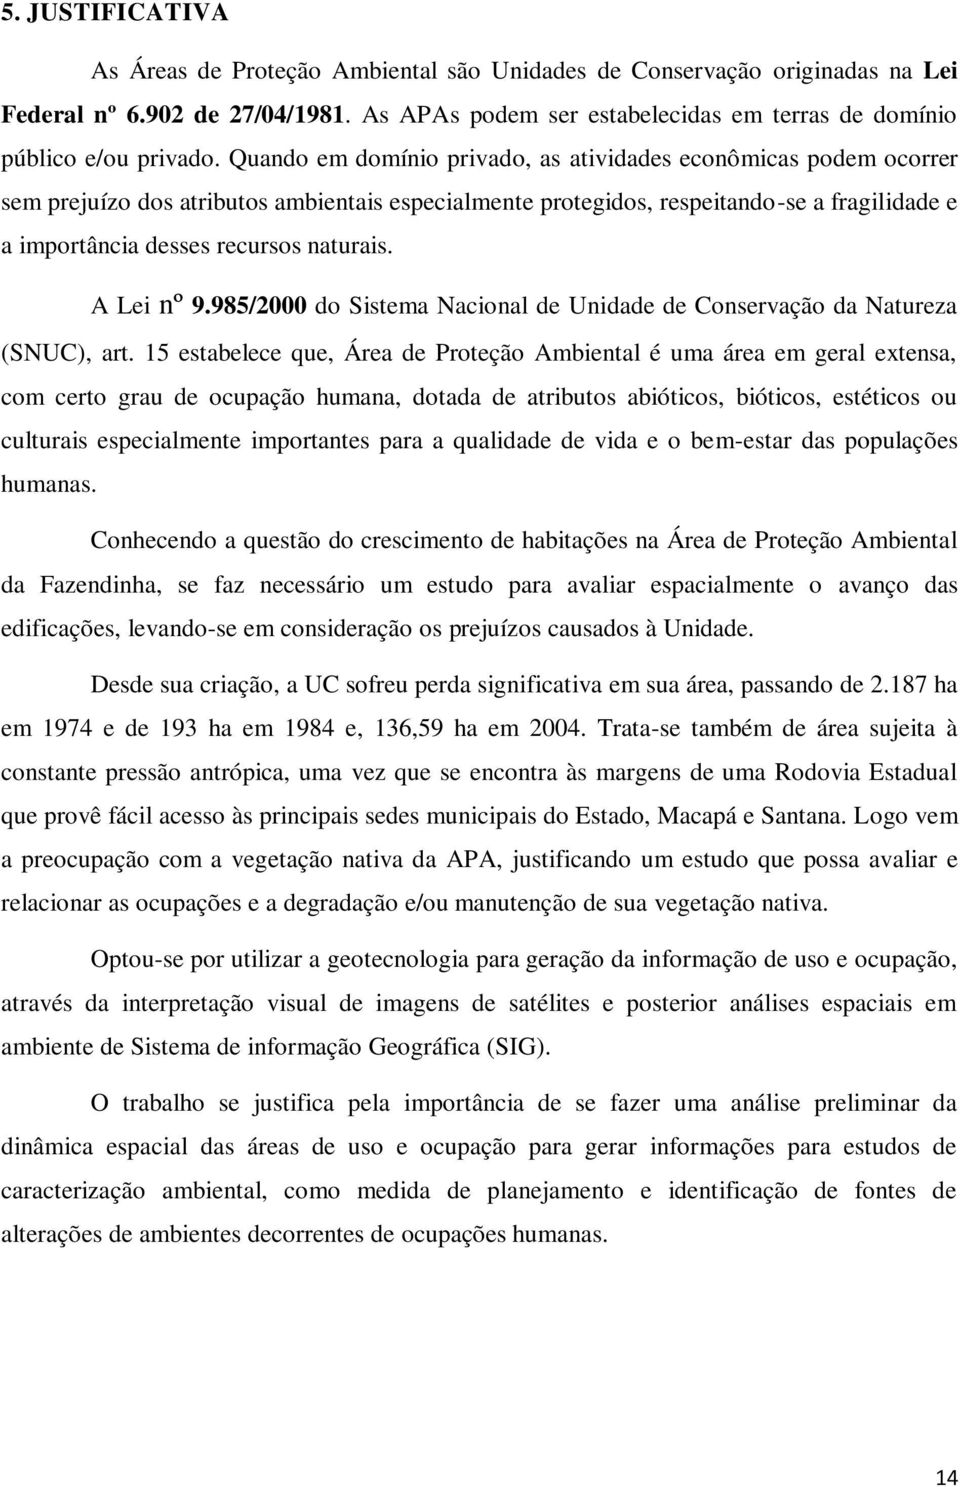 A Lei nº 9.985/2000 do Sistema Nacional de Unidade de Conservação da Natureza (SNUC), art.